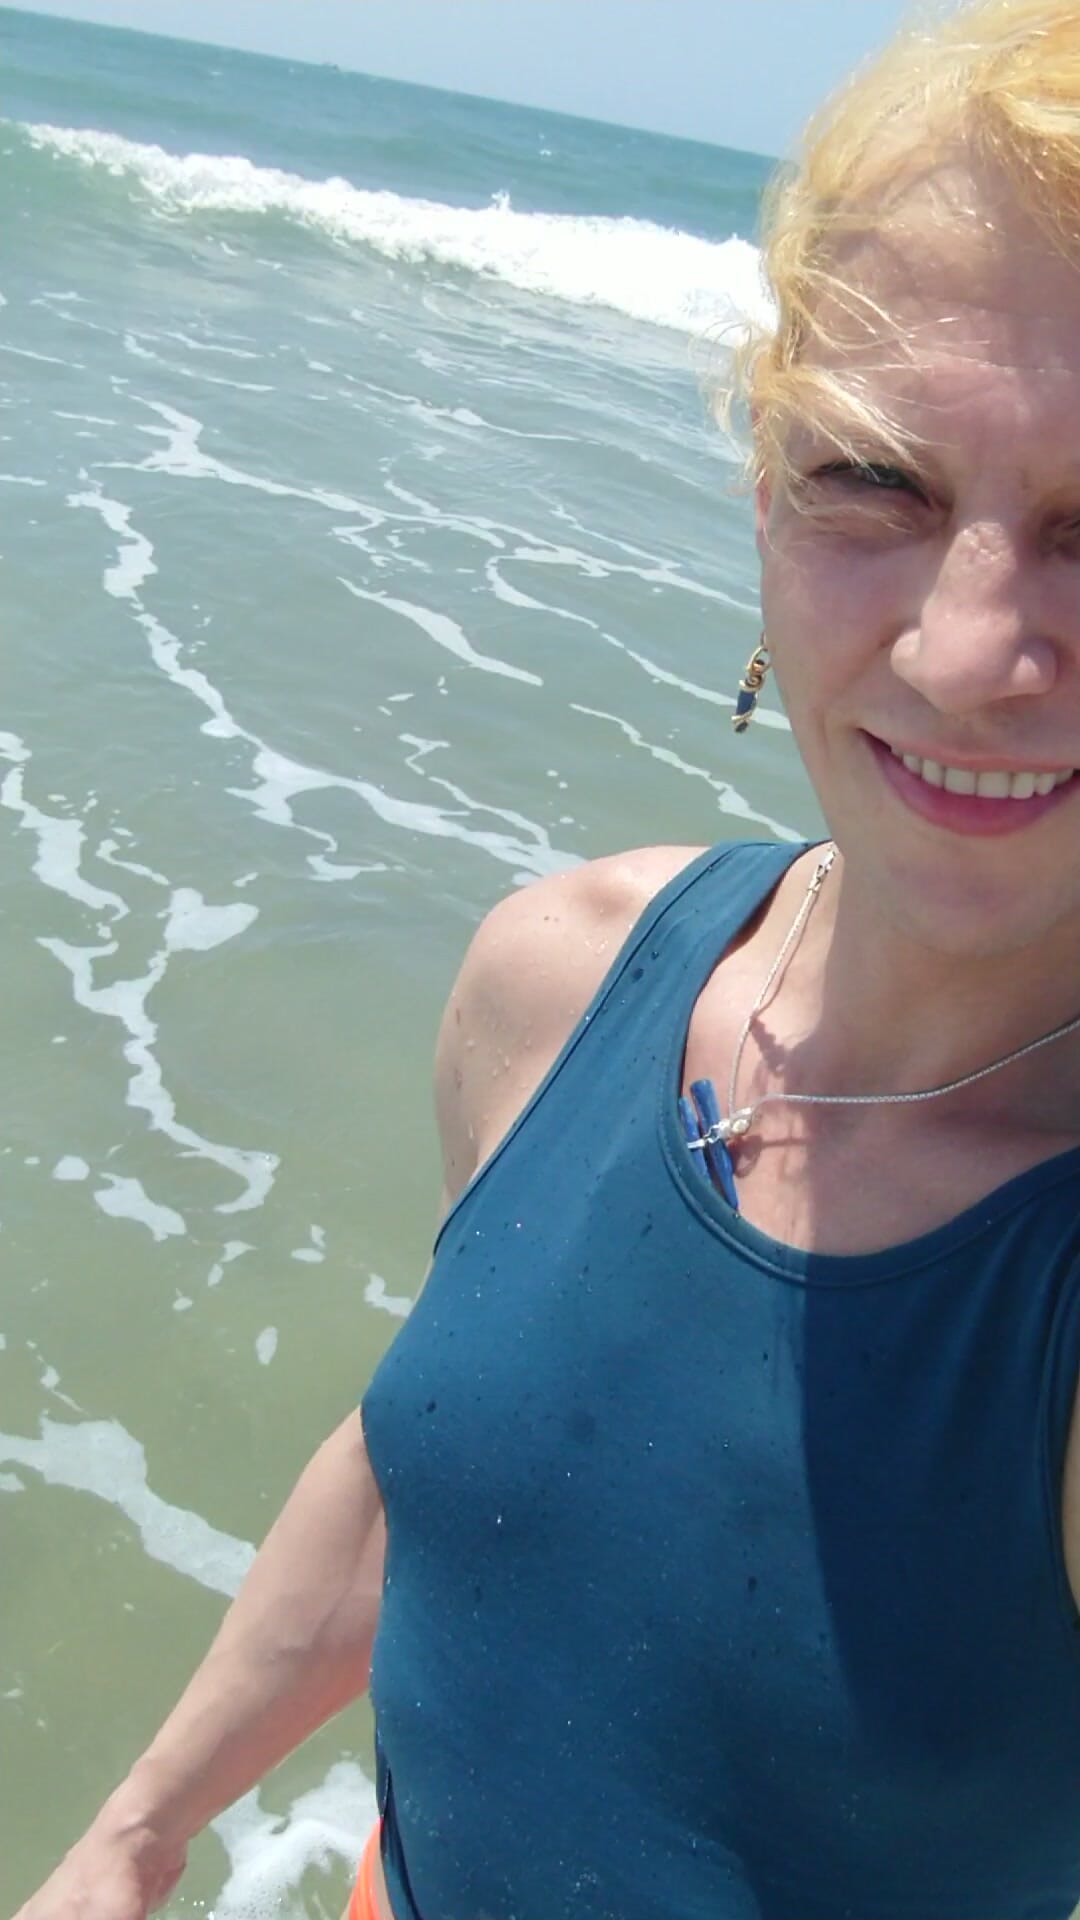 Transgirl, das zum ersten mal im roten höschen und blauen t-shirt im Pazifik schwimmt. Sonne und heißes Wetter genießen. Wetlook-titten im t-shirt.